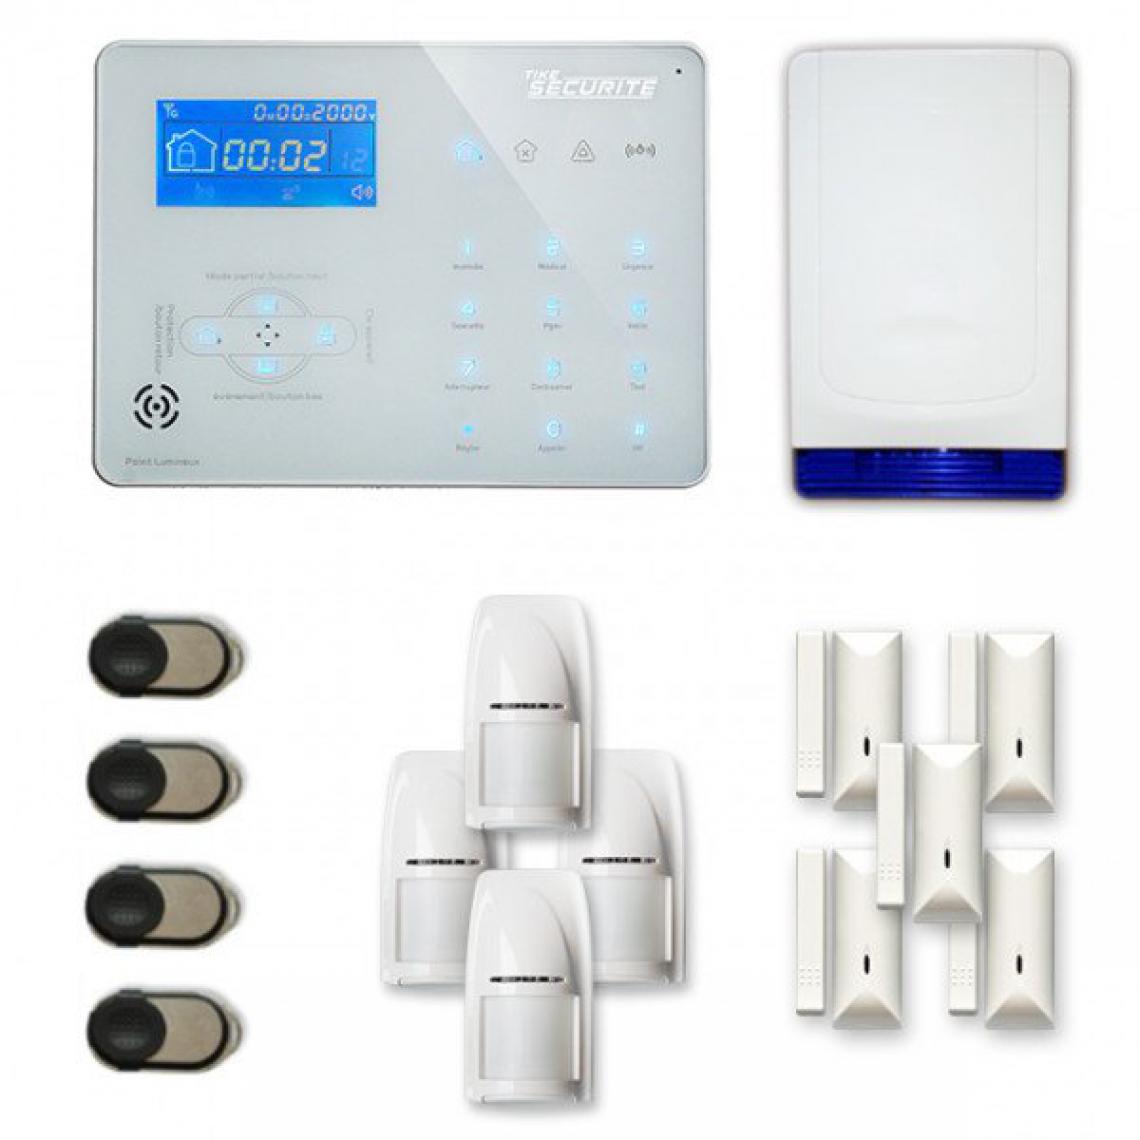 Tike Securite - Alarme maison sans fil ICE-B34 Compatible Box internet - Alarme connectée